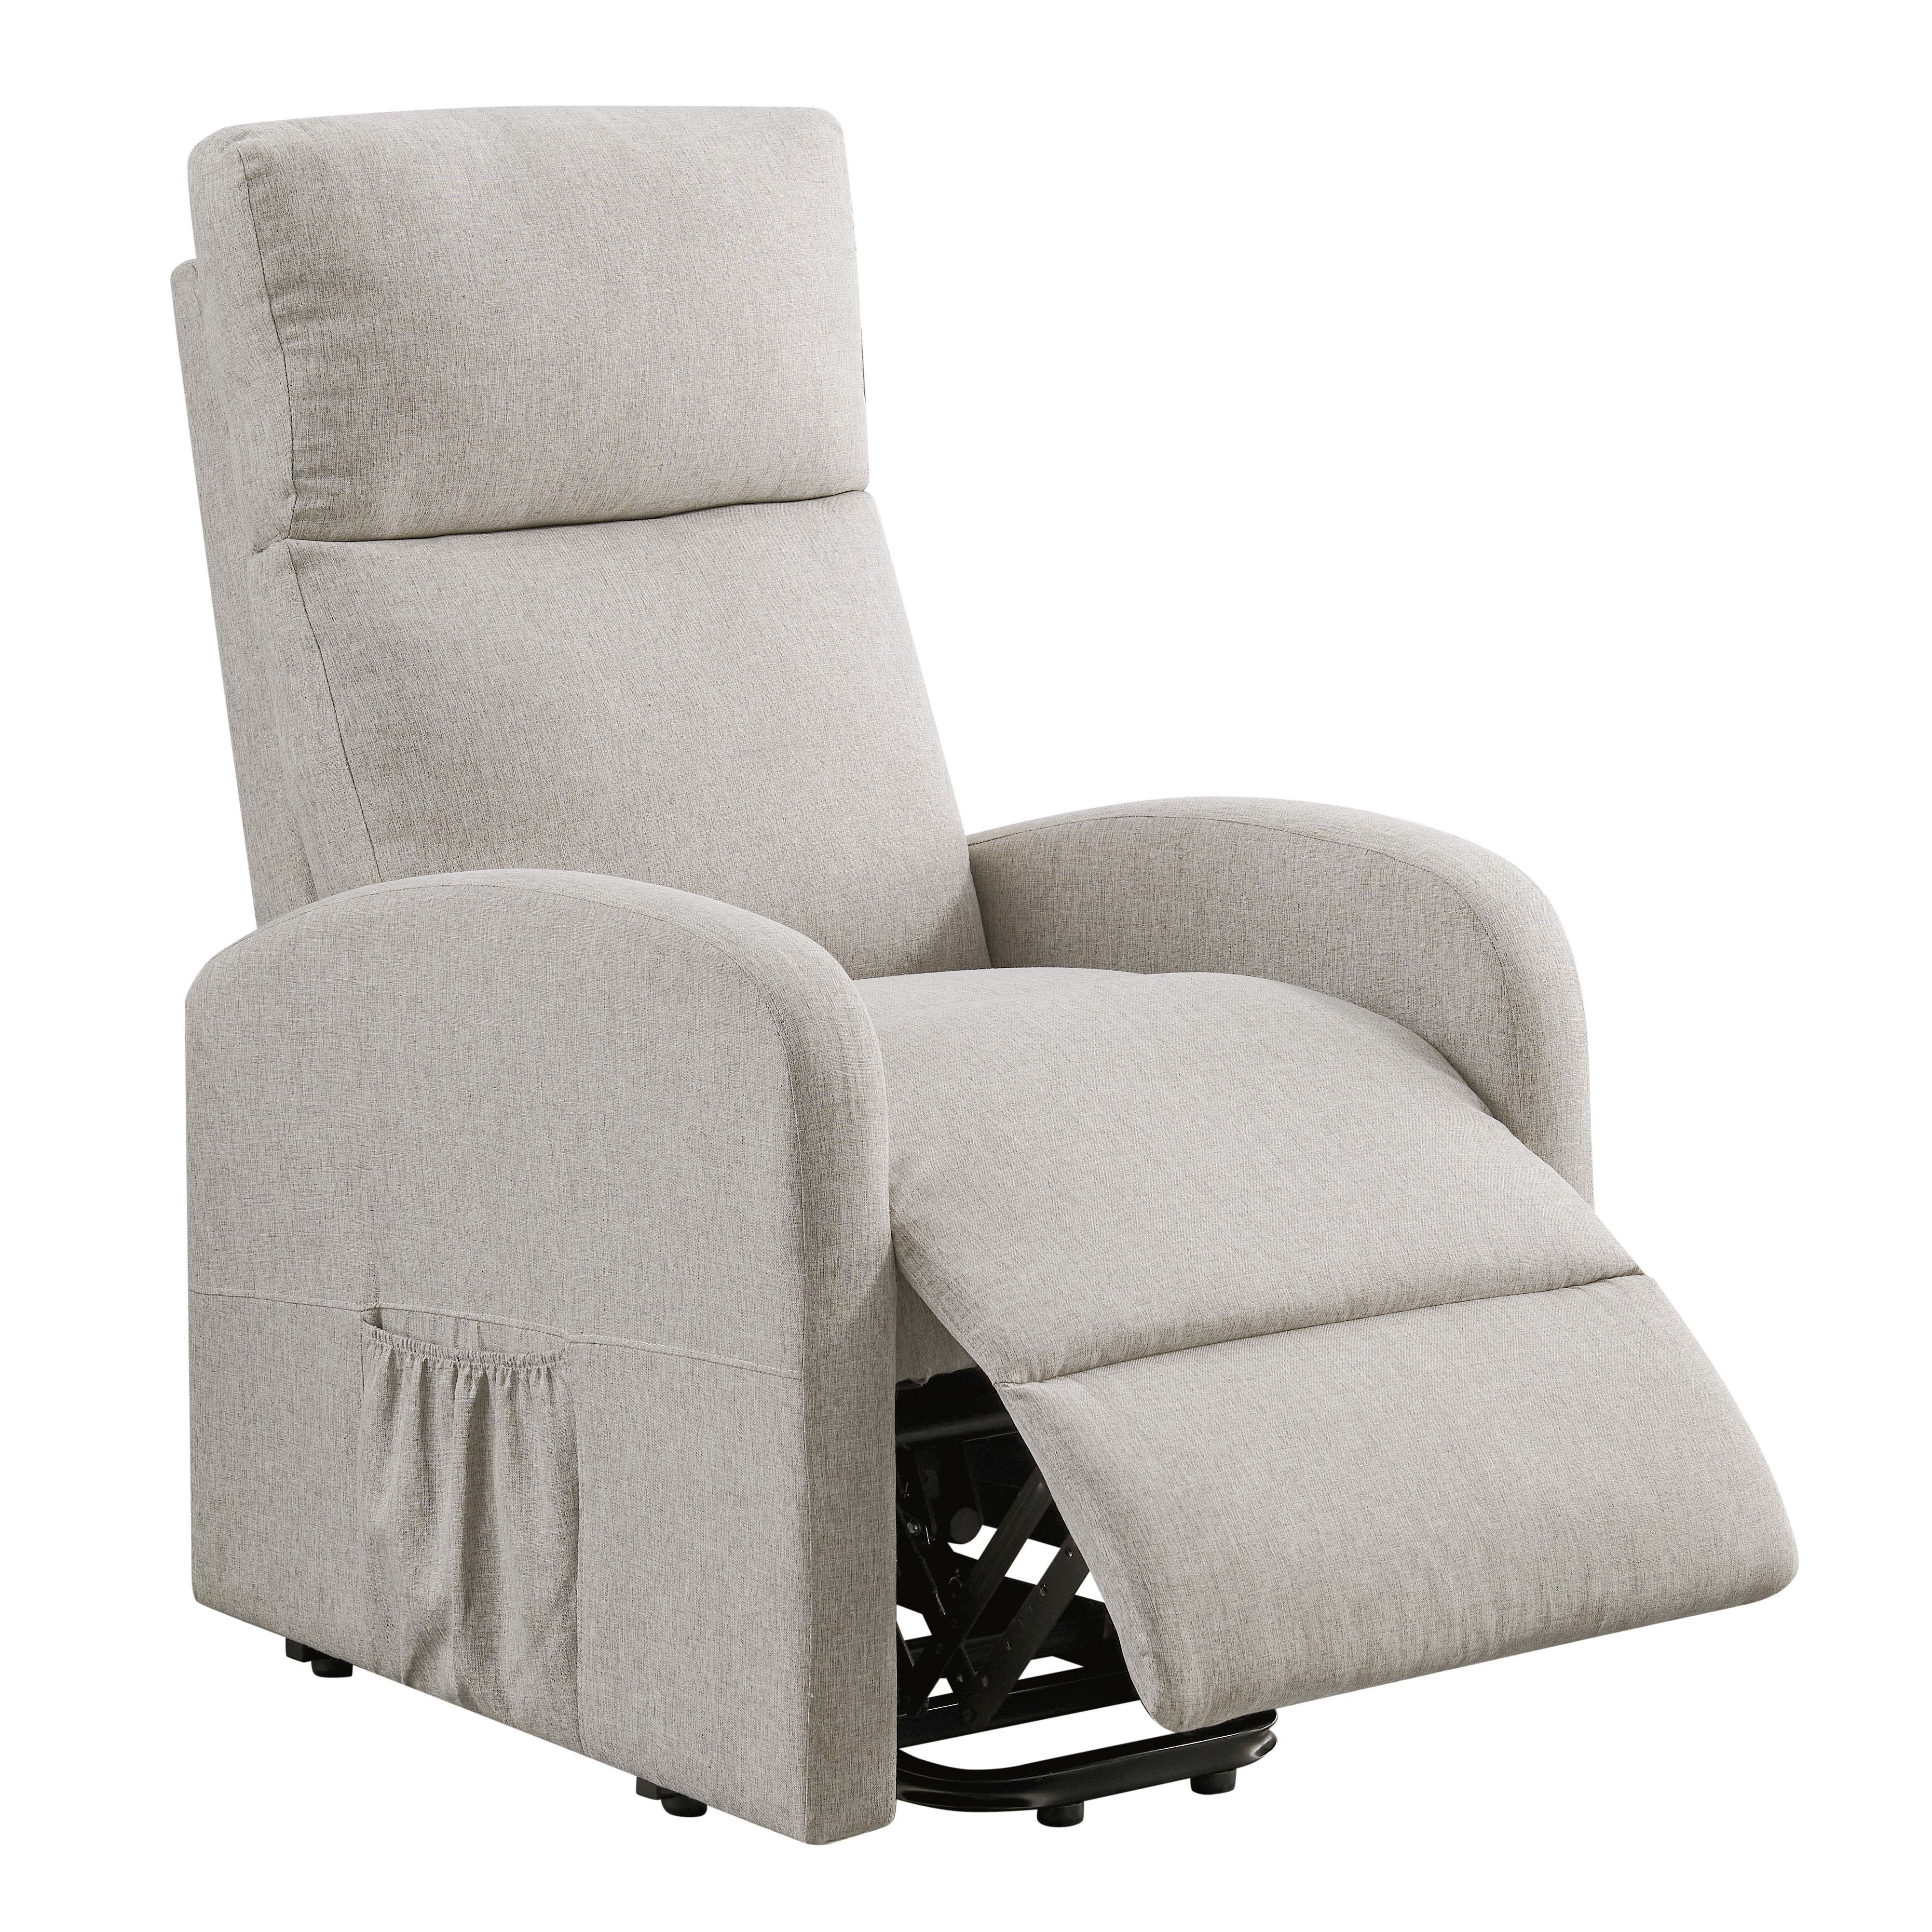 Barker Lift & Tilt Cream Recliner Chair (Dual Motor)